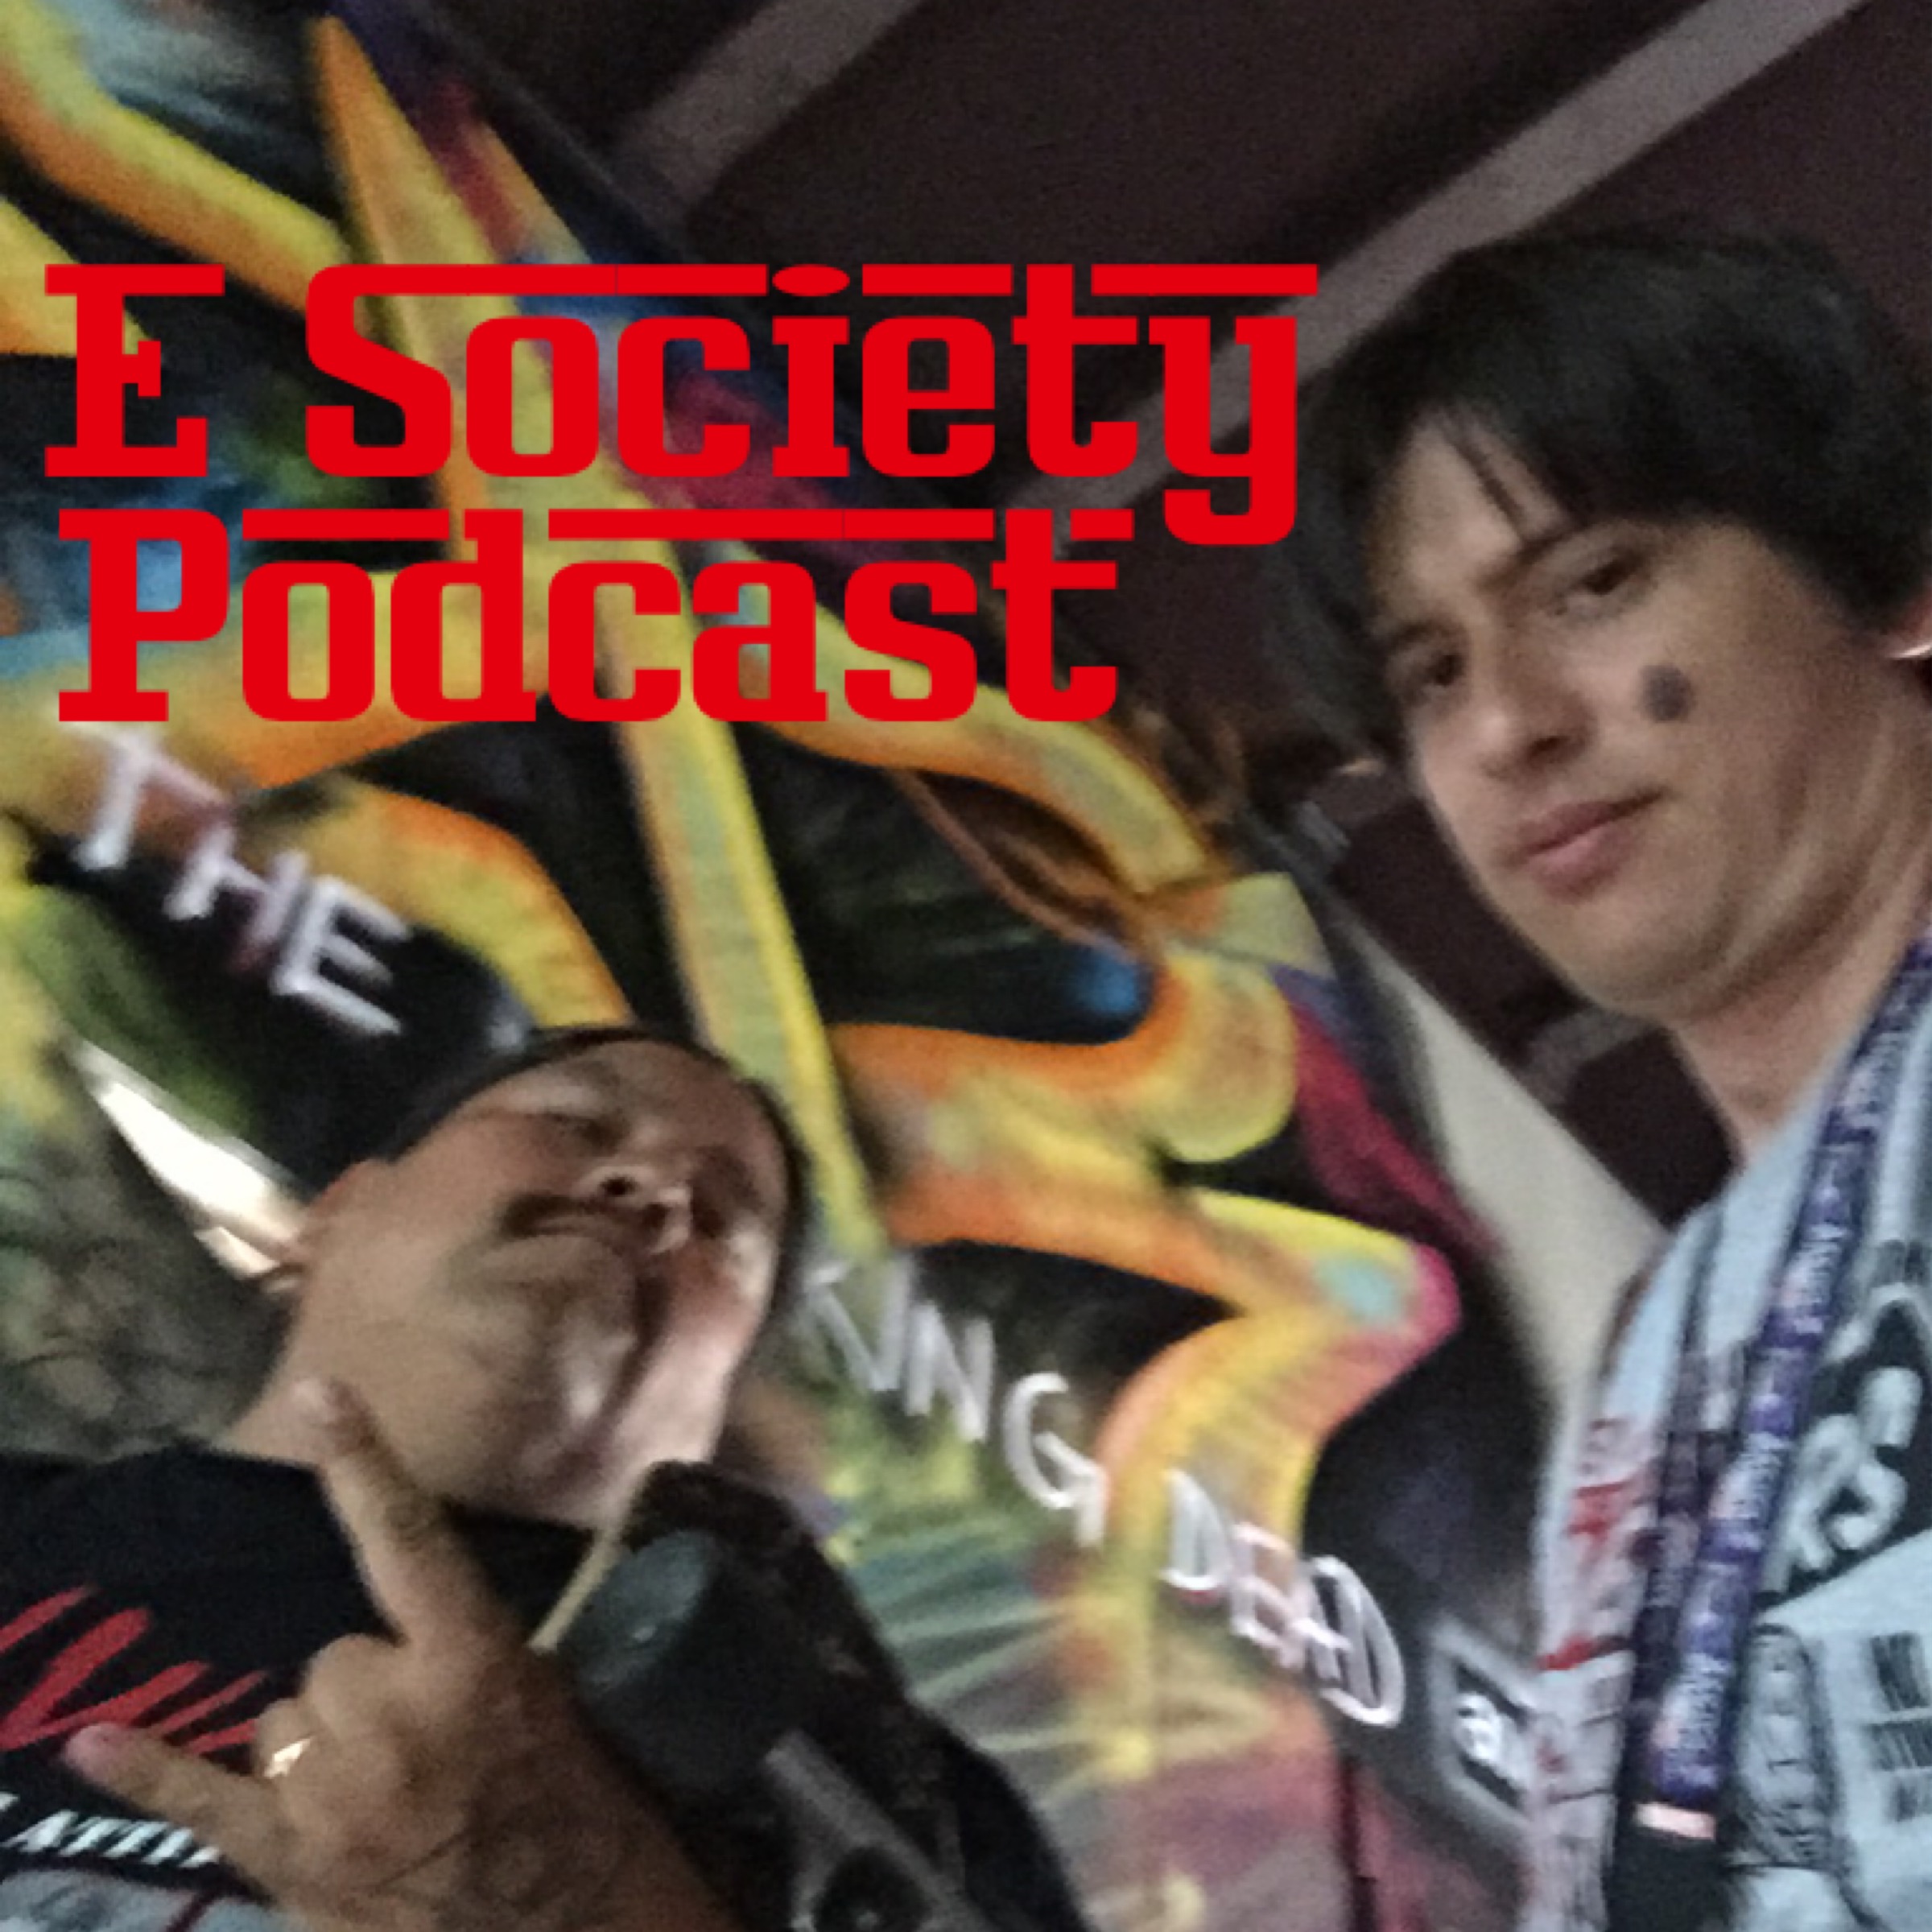 E Society Podcast - Ep. 45: Saul good man!